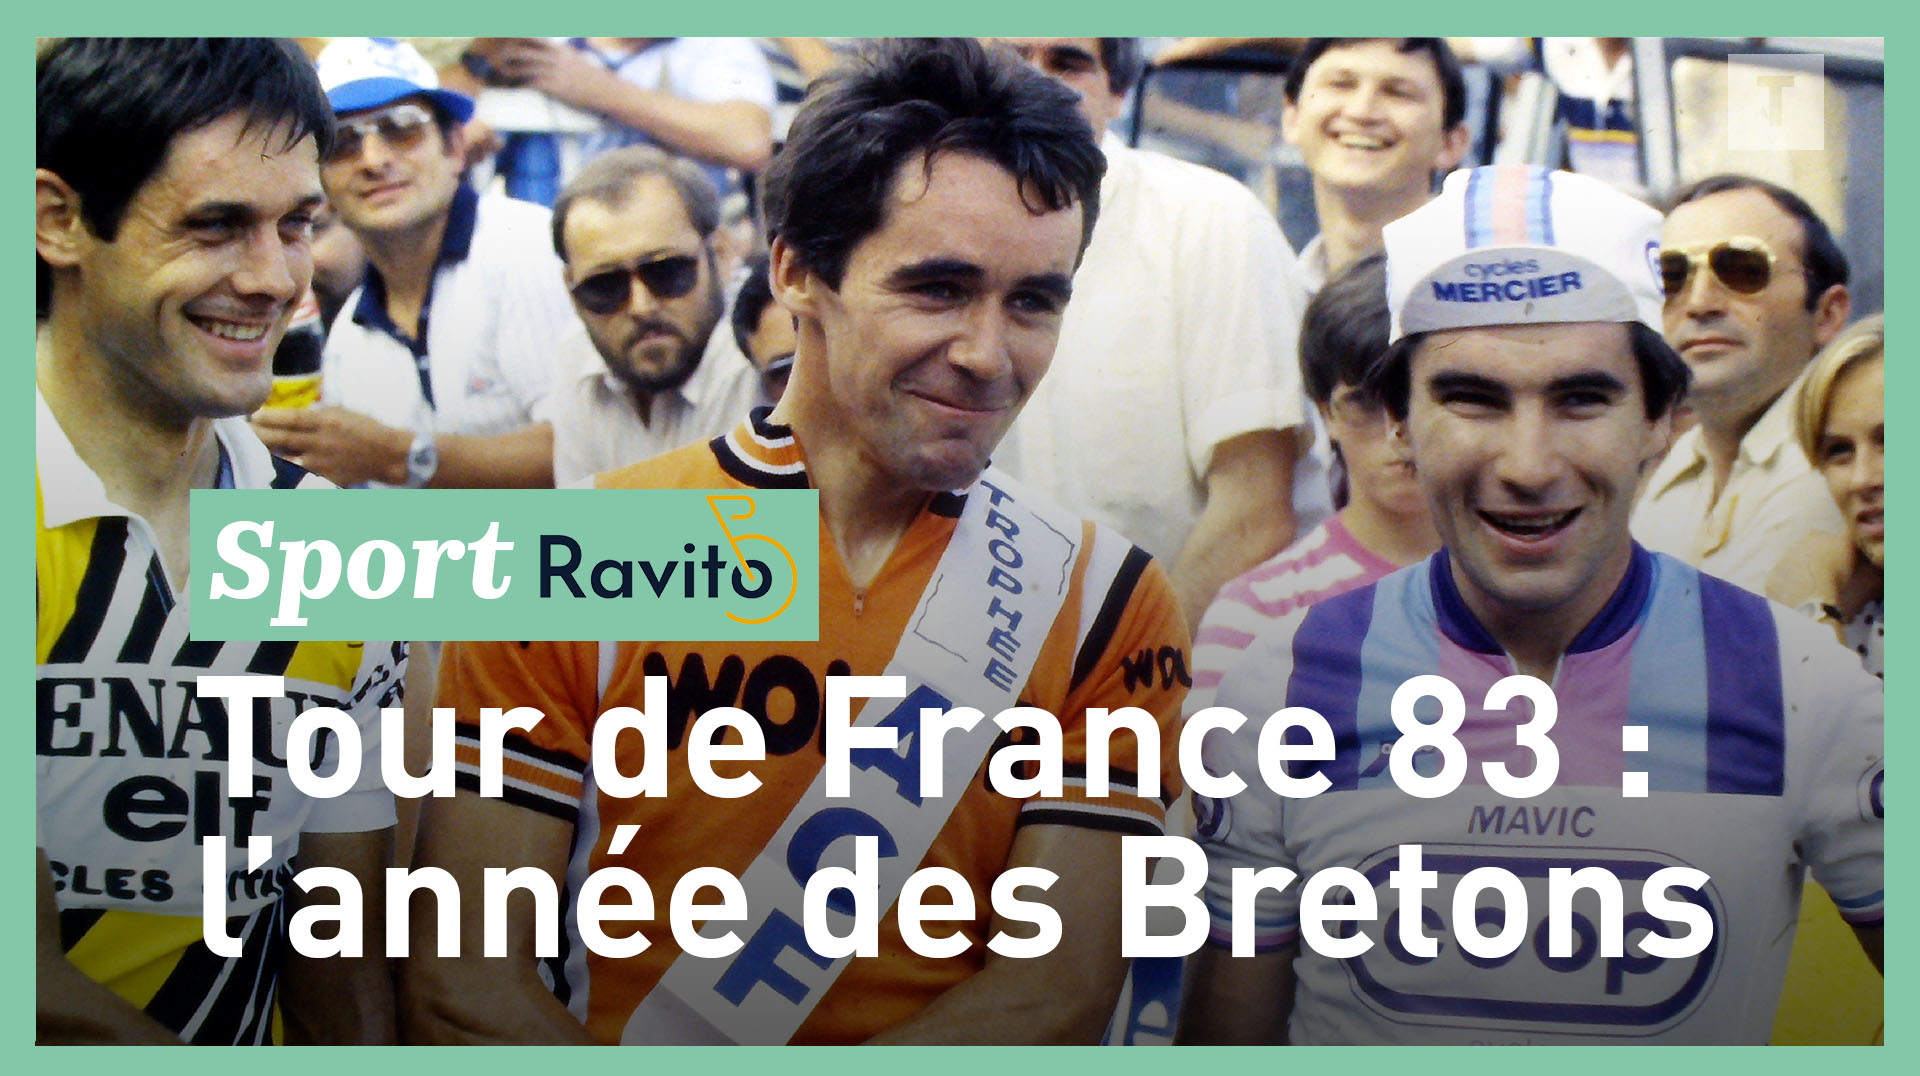 Ravito #71 : les retrouvailles des vainqueurs bretons du Tour de France 1983 [Vidéo]